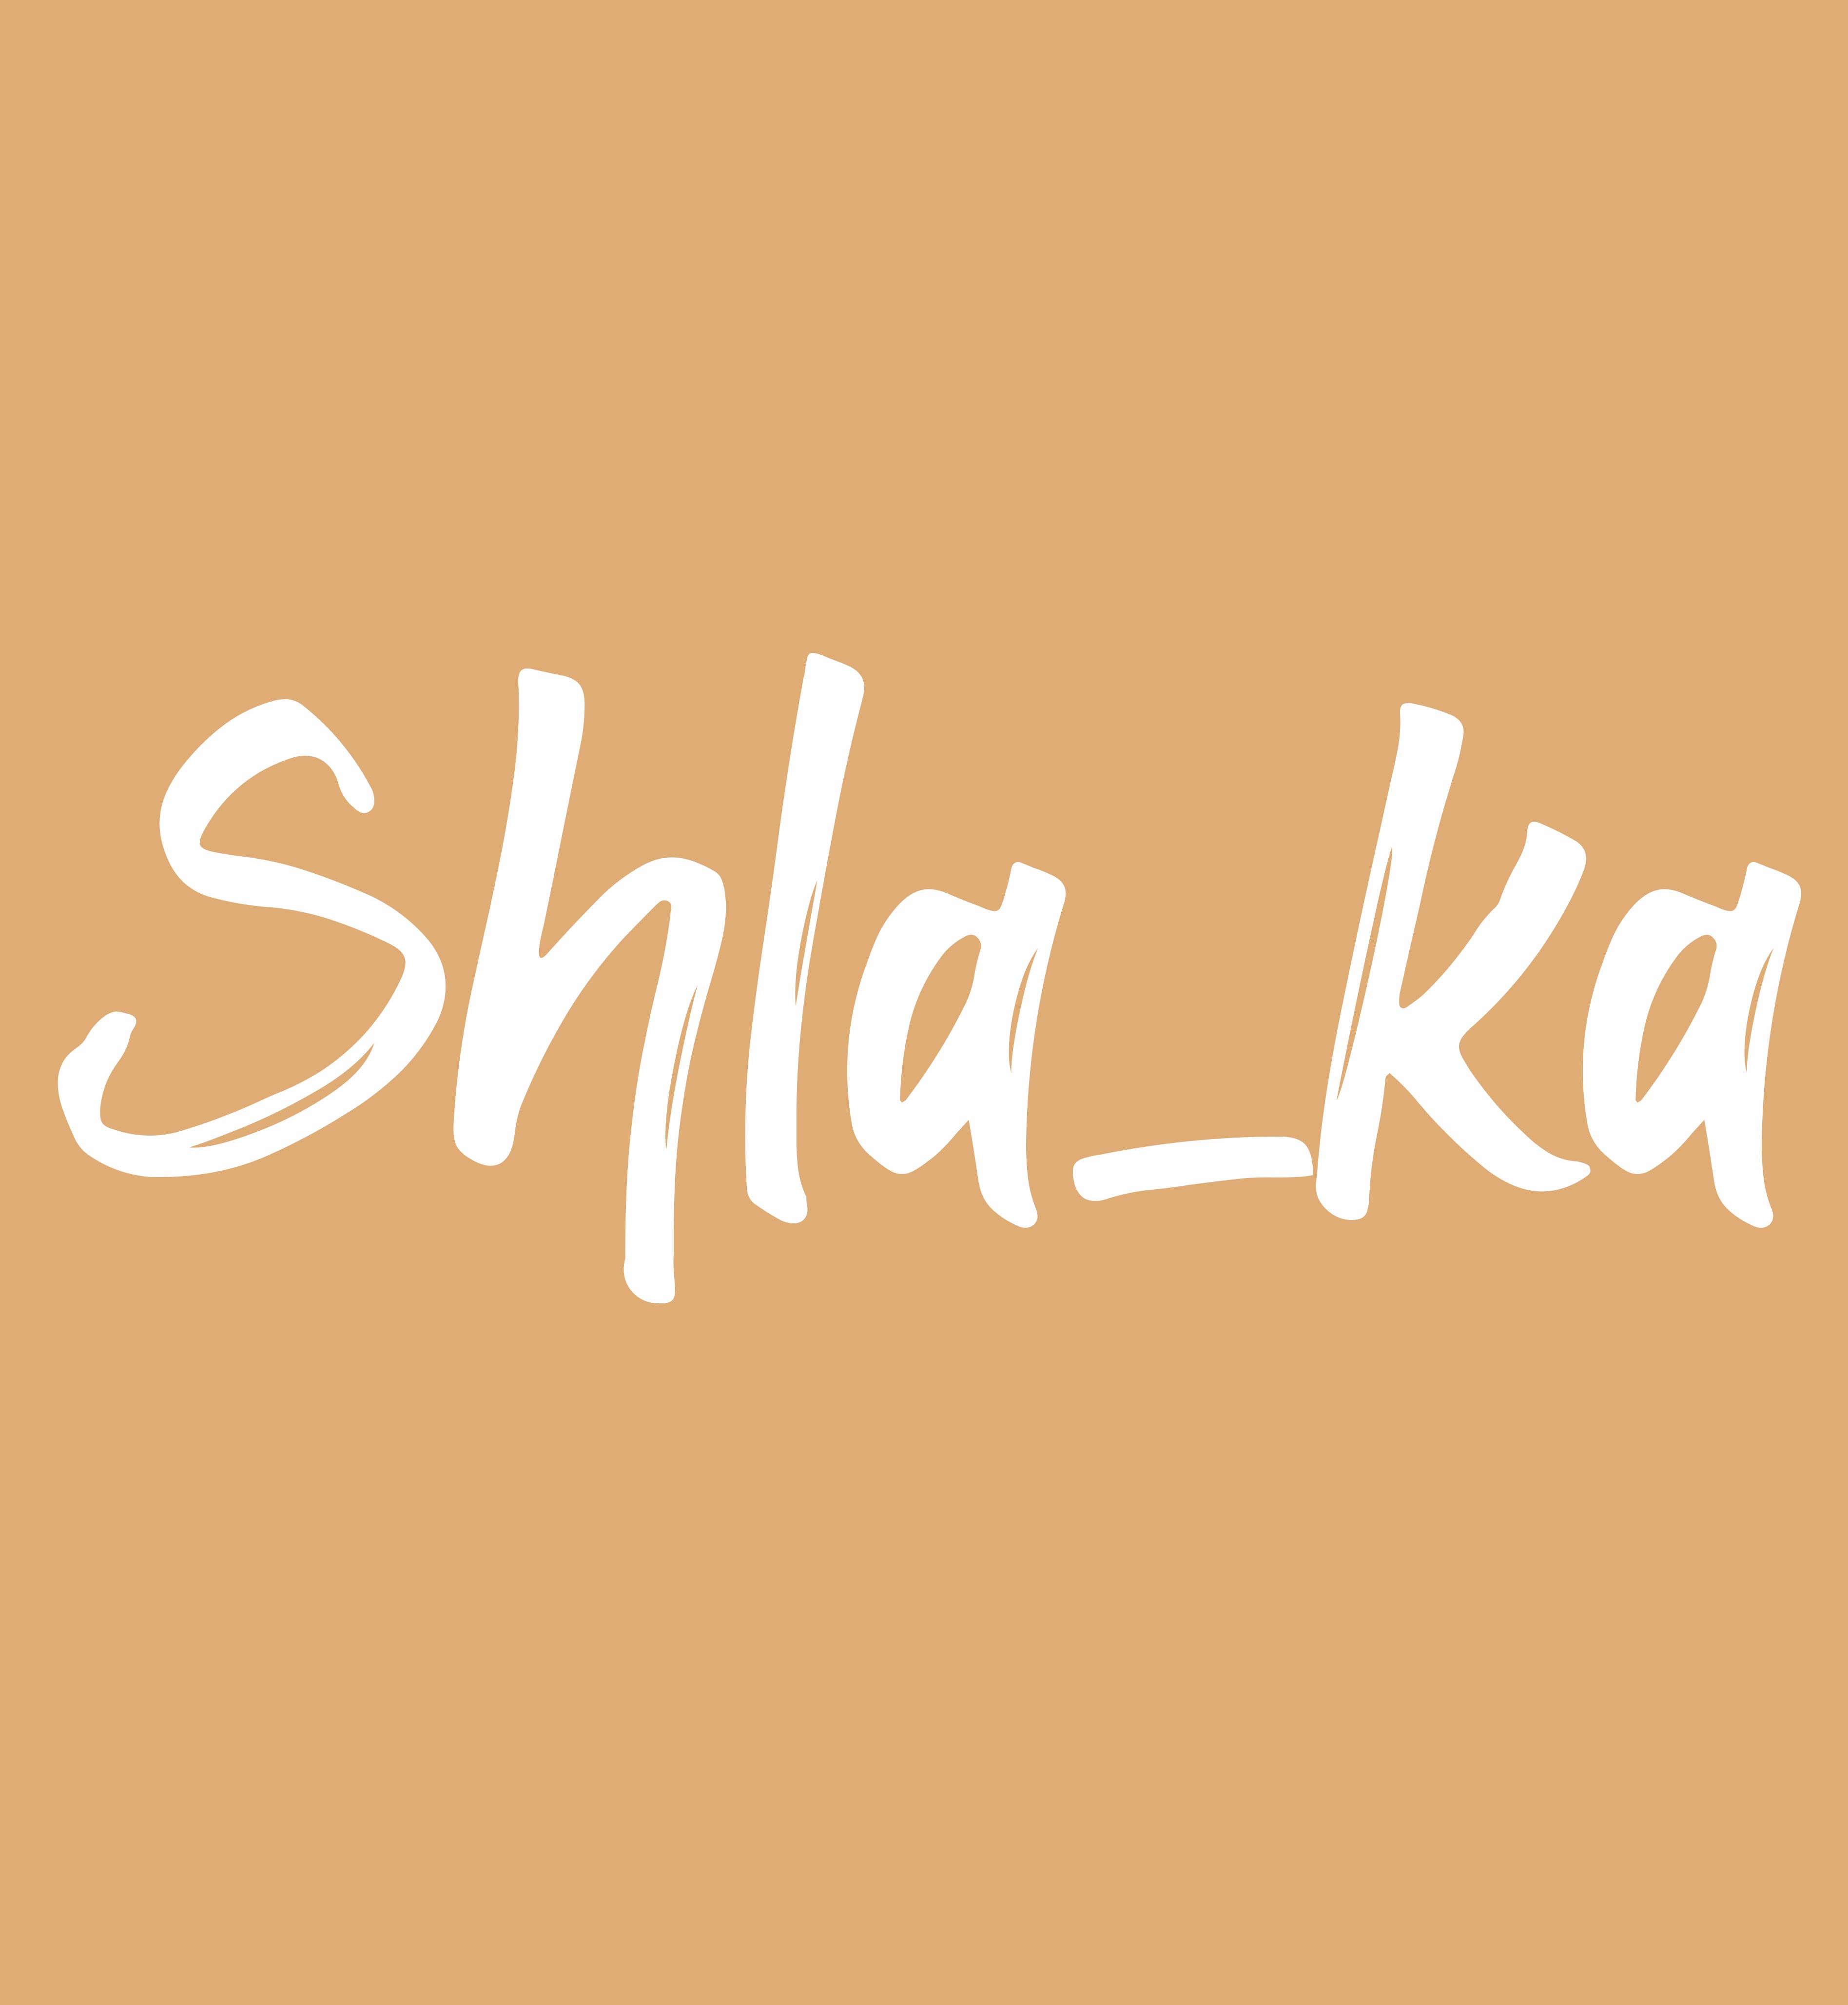 SHLA_KA